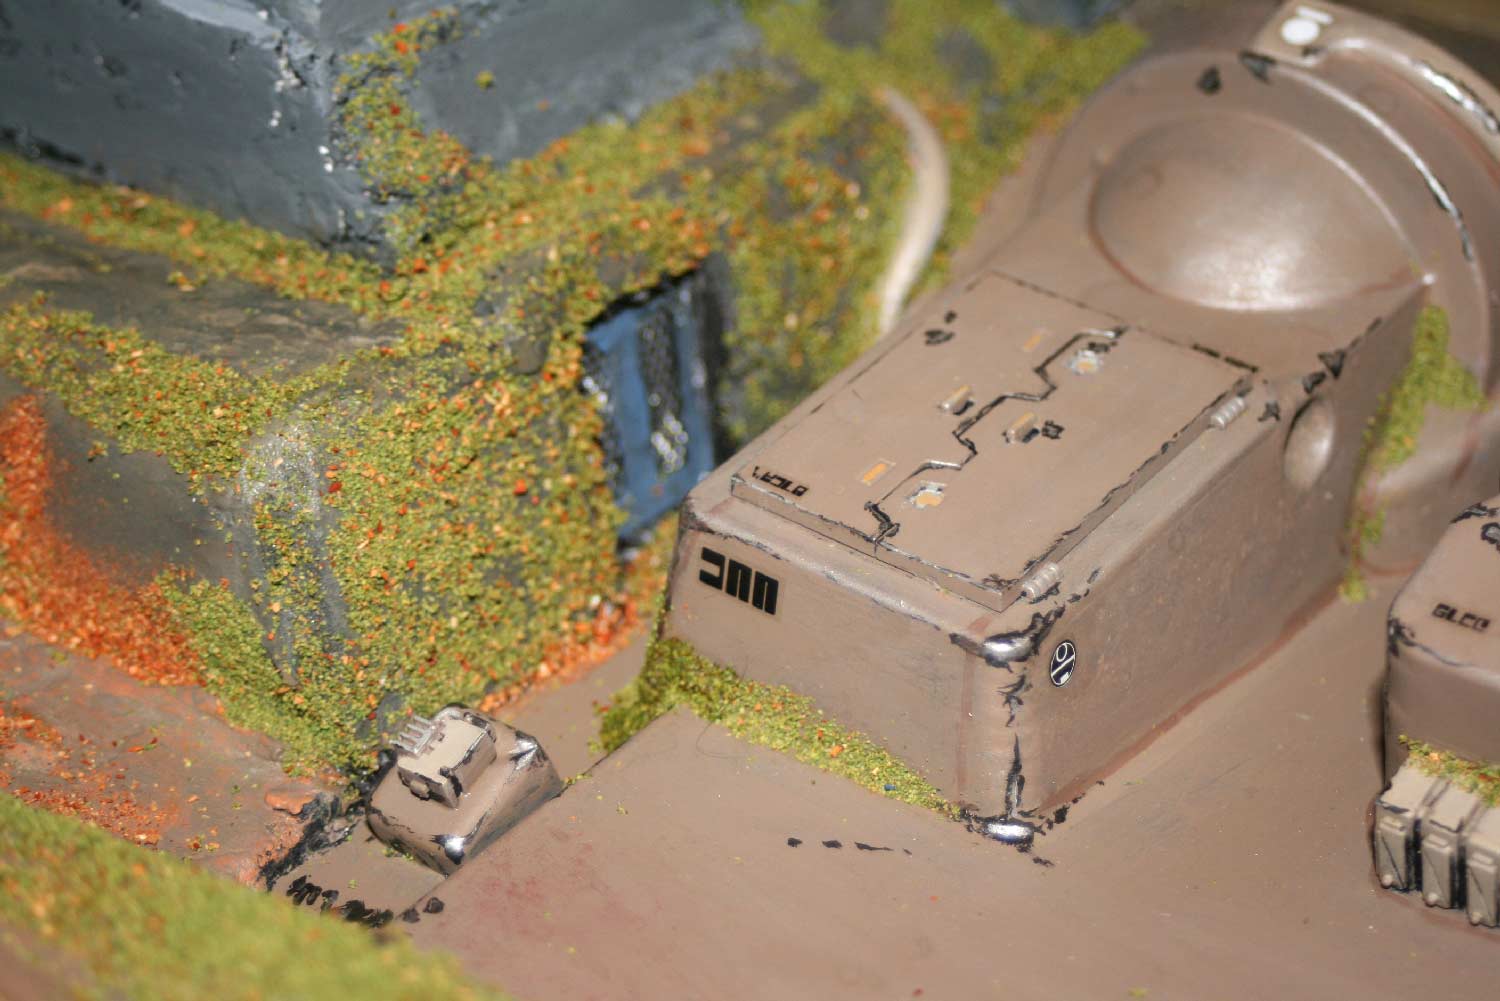 le packaging de la souris sans fil a été complété par des rabios de tank Prédator pour ajouter des détails qui crédibilisent le décor (Décor Warhammer)